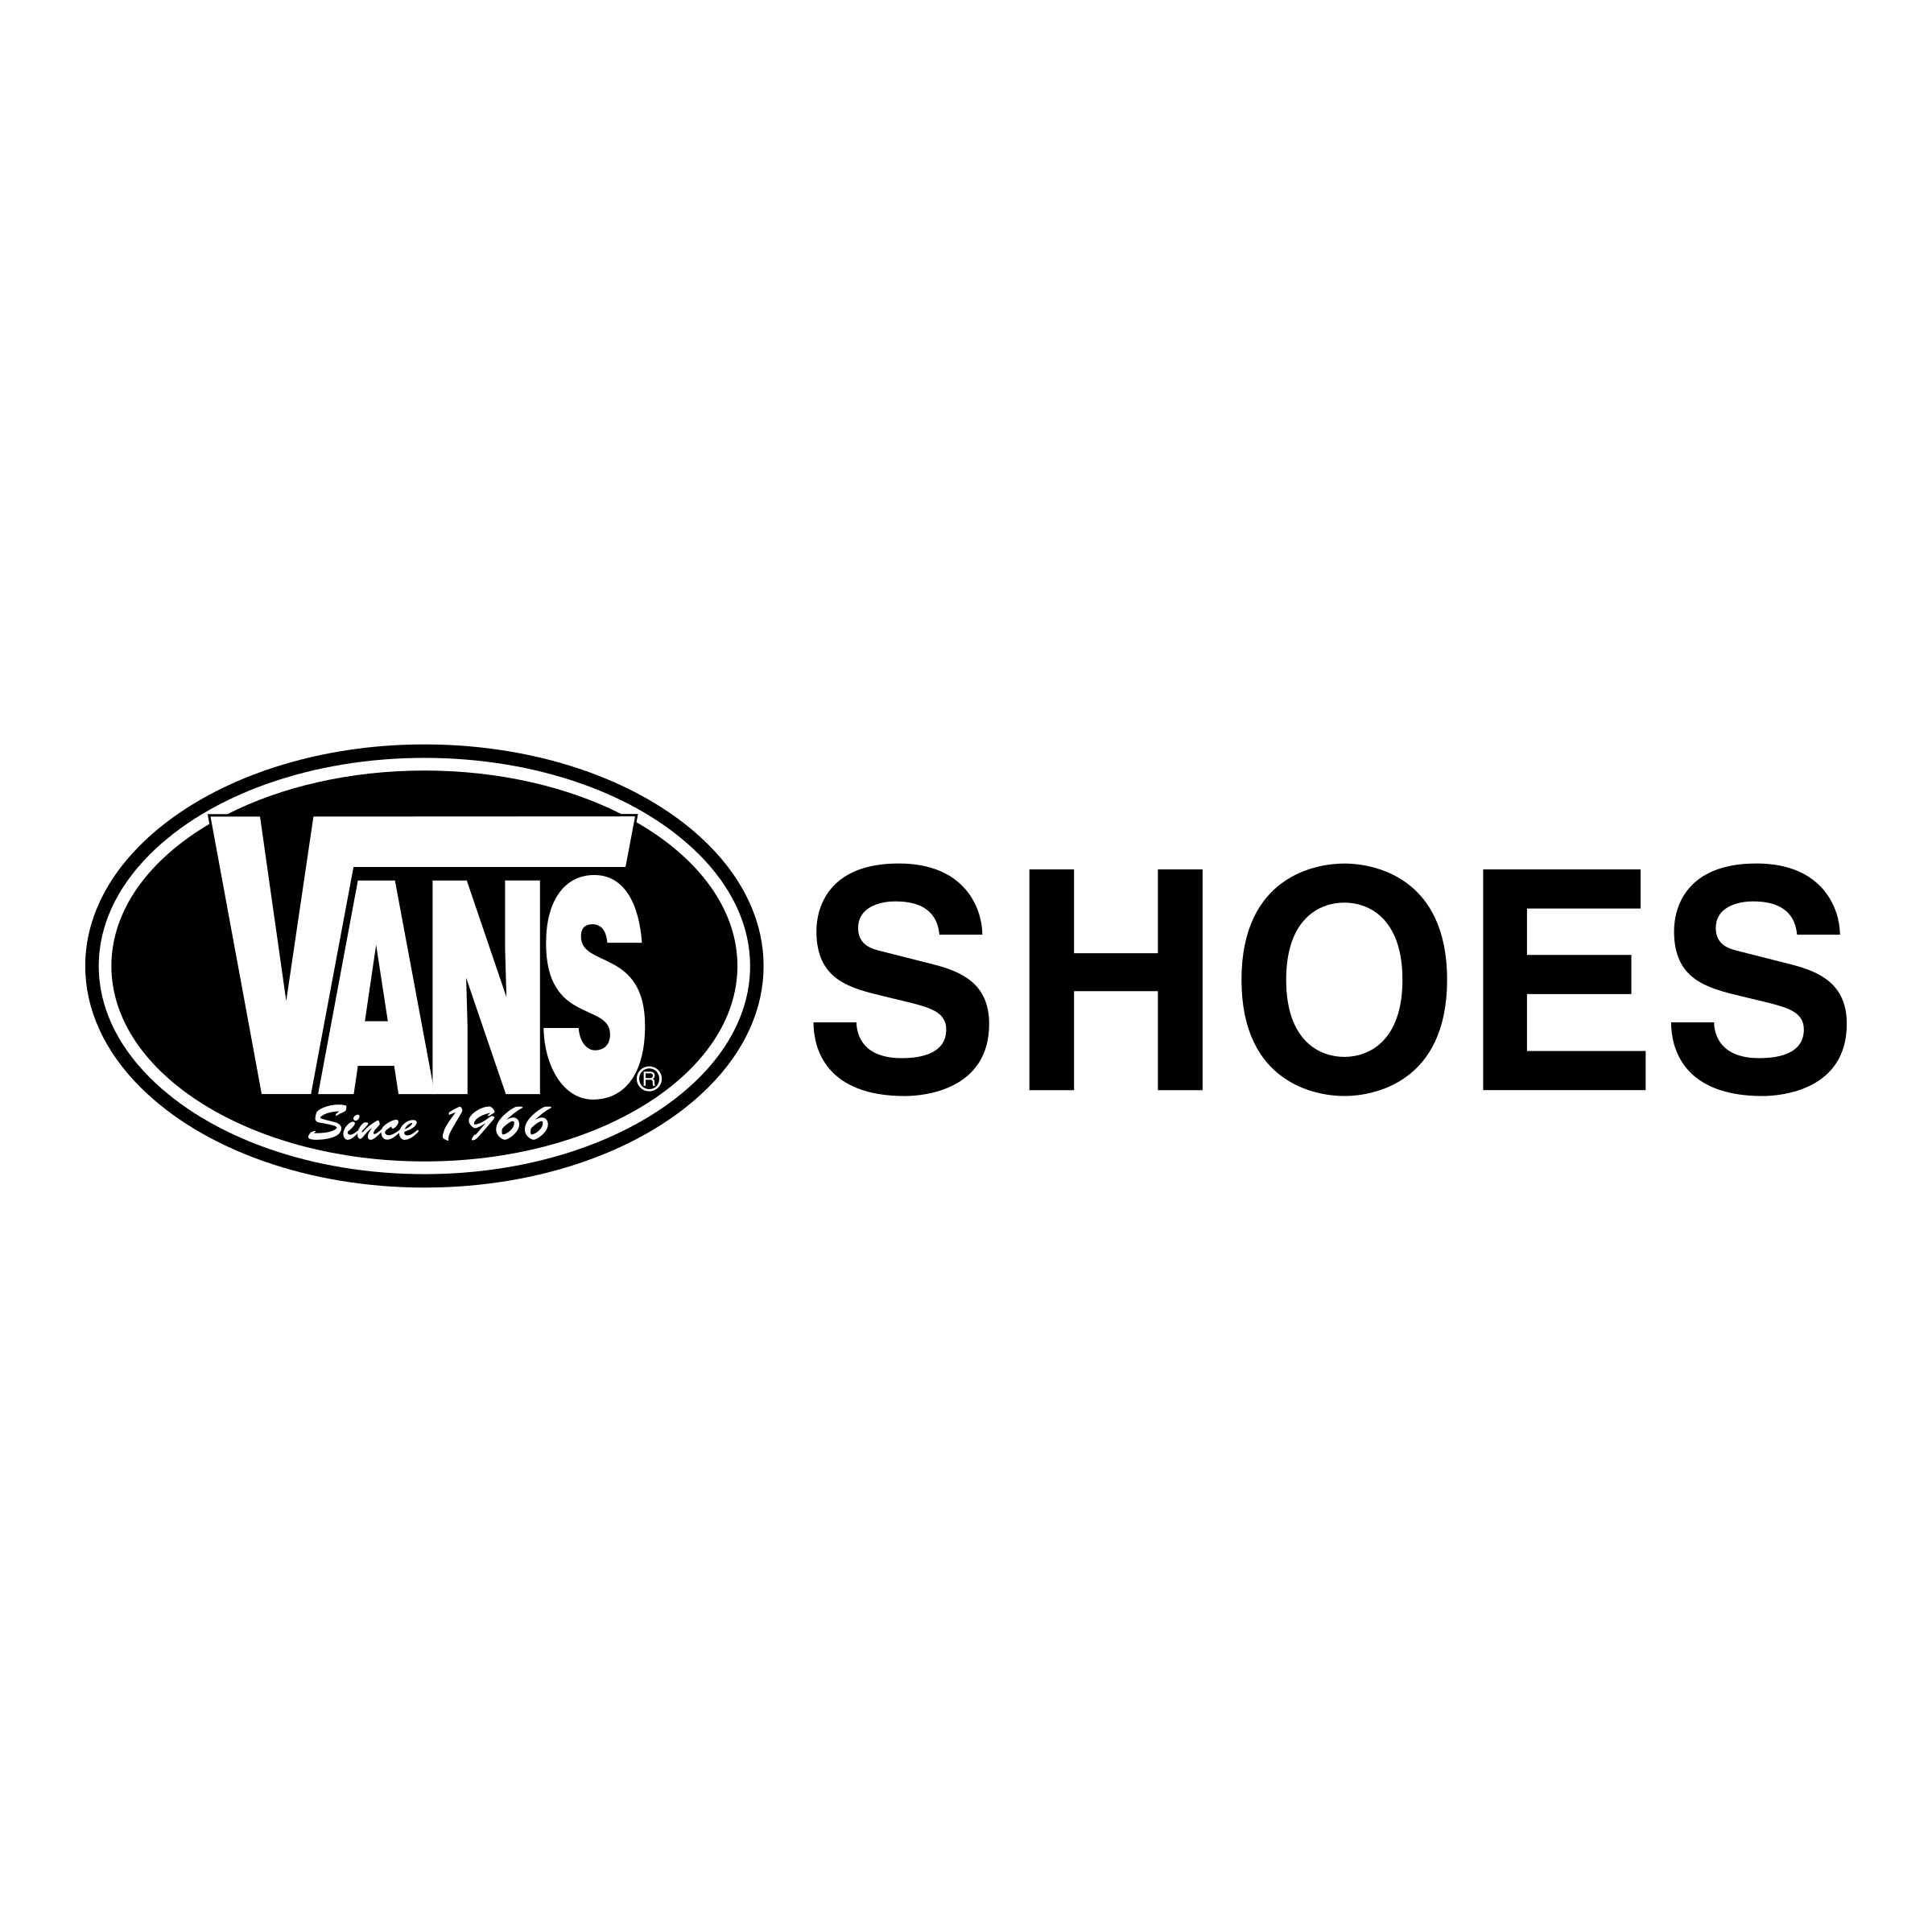 Vans Shoes Logo - Vans Shoes Logo PNG Transparent & SVG Vector - Freebie Supply